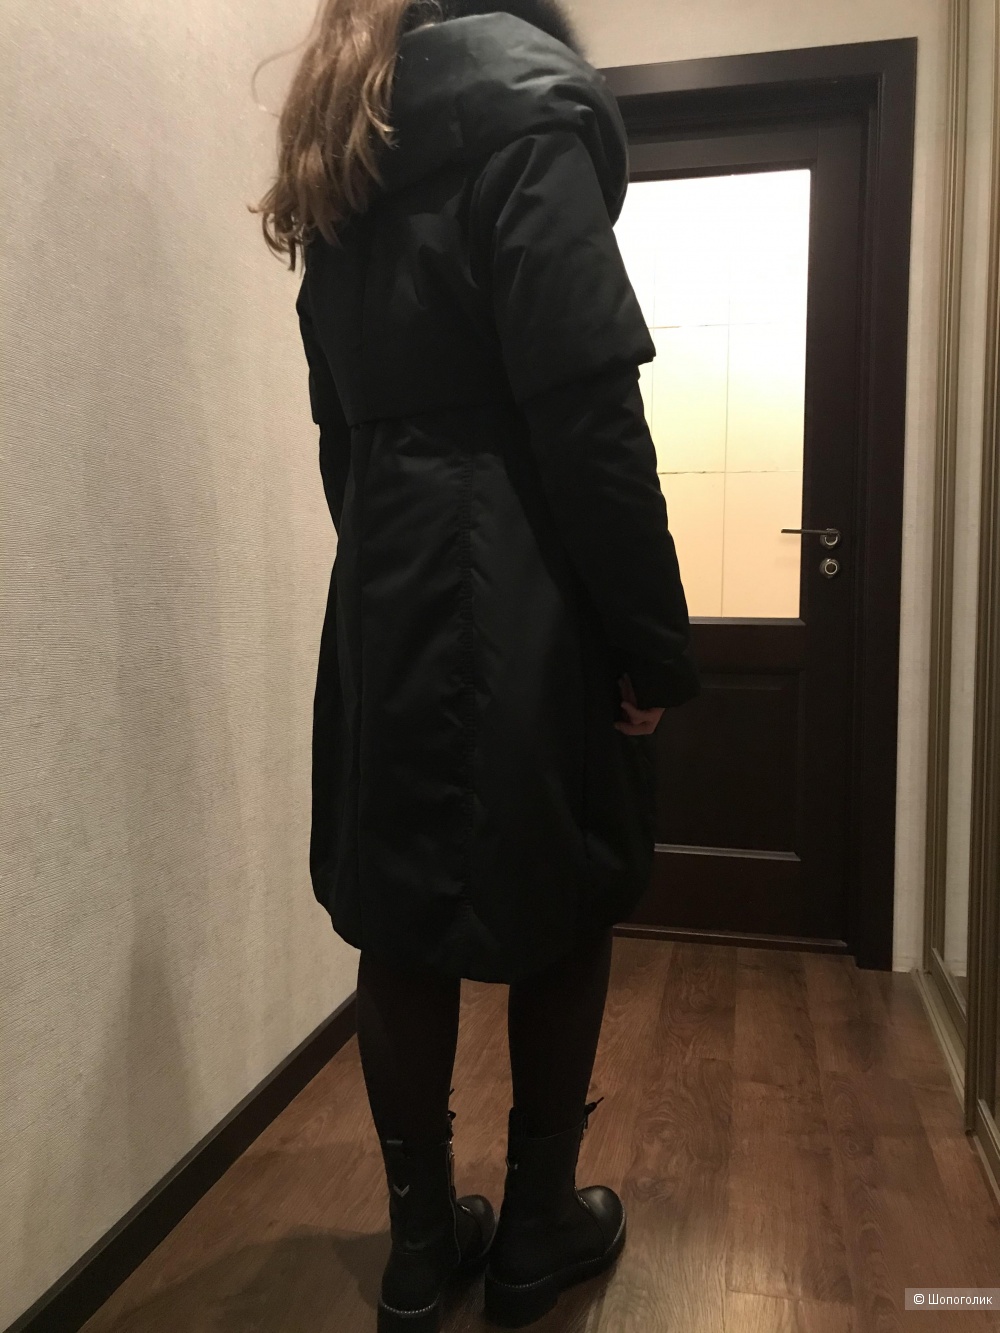 Пуховик пальто Visconf Италия 46 размер